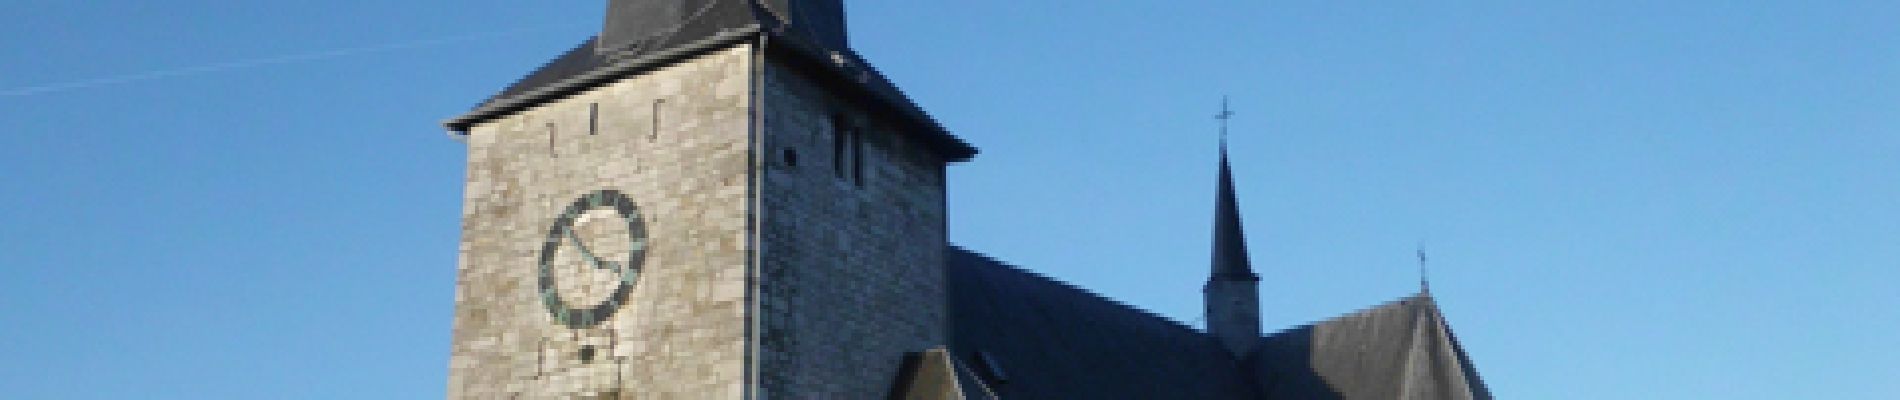 Point d'intérêt Limbourg - L'église Saint-Lambert - Photo